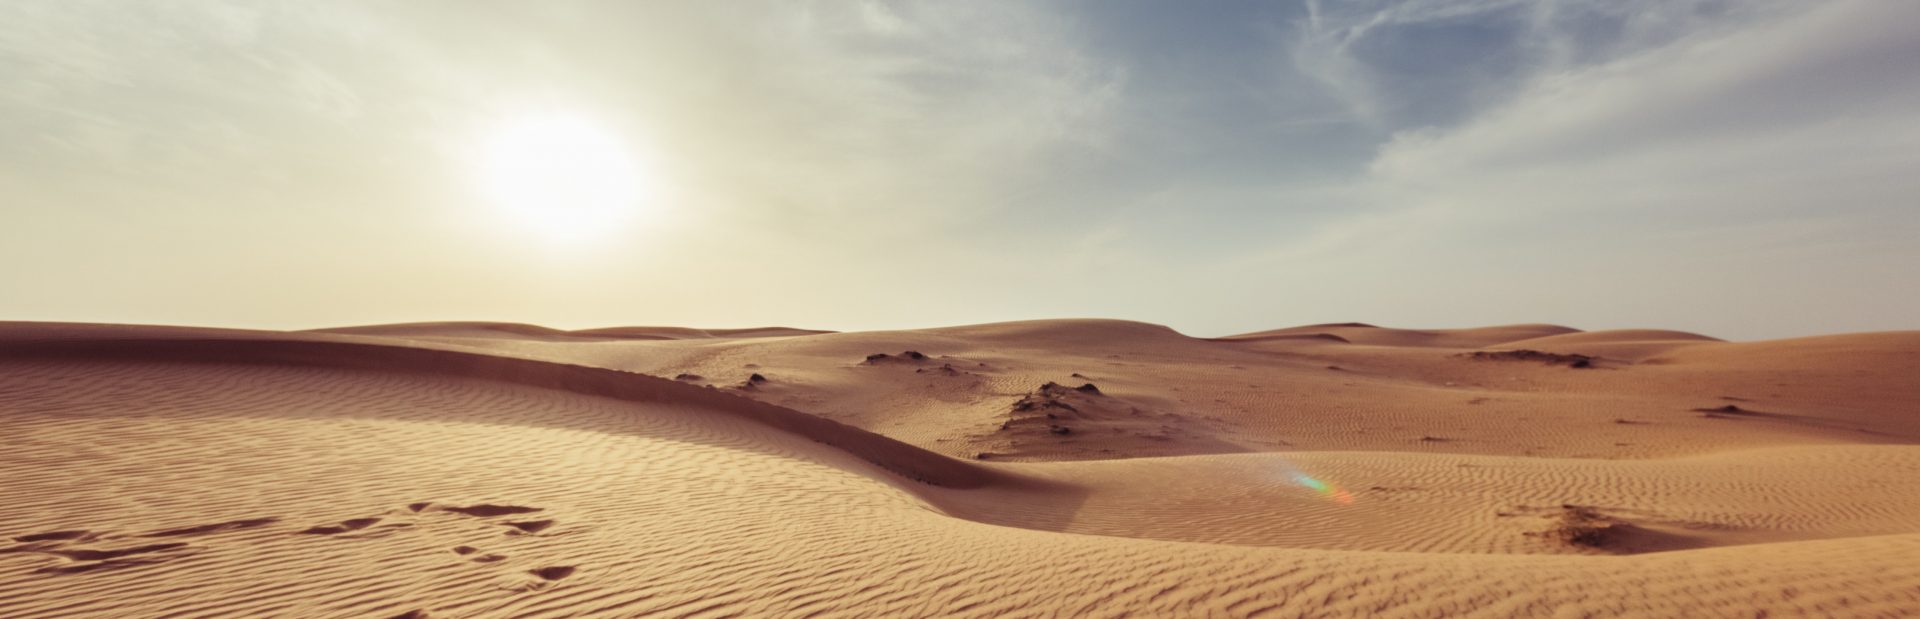 Dry dry desert